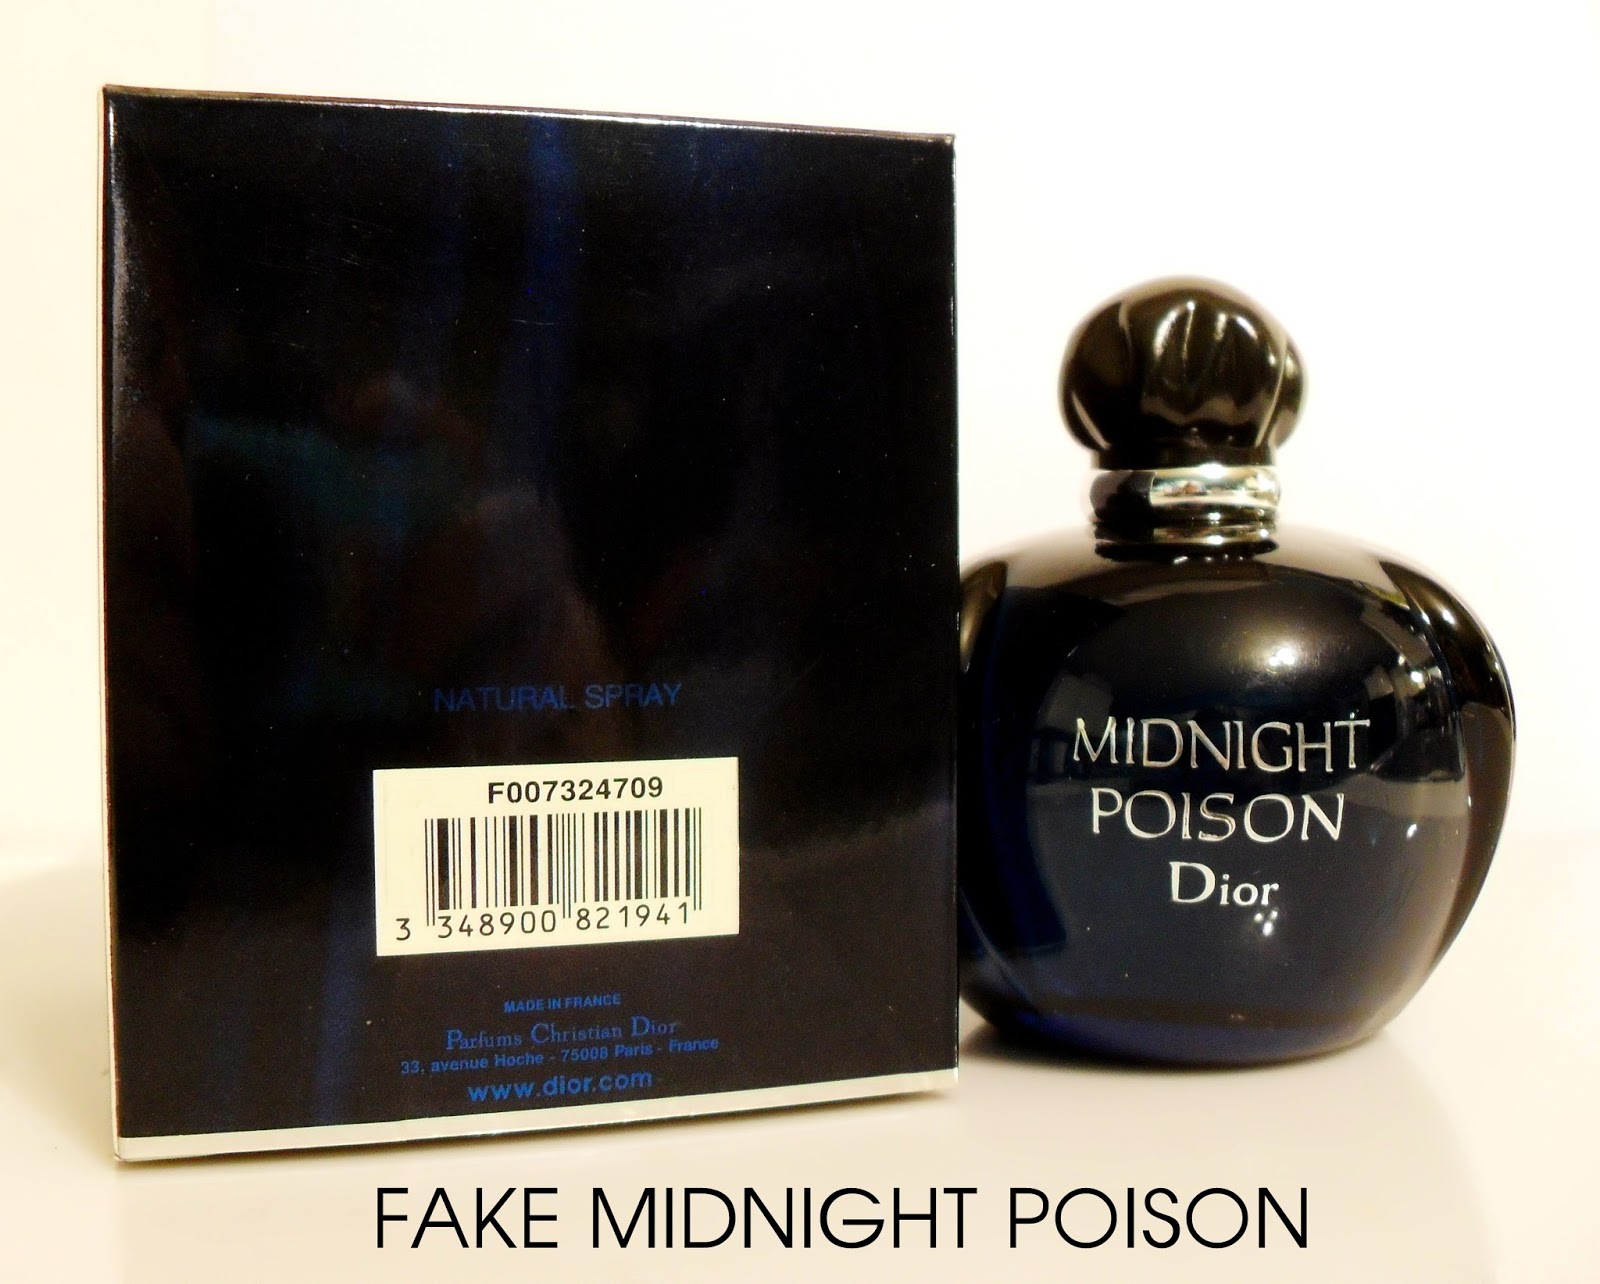 midnight poison perfume